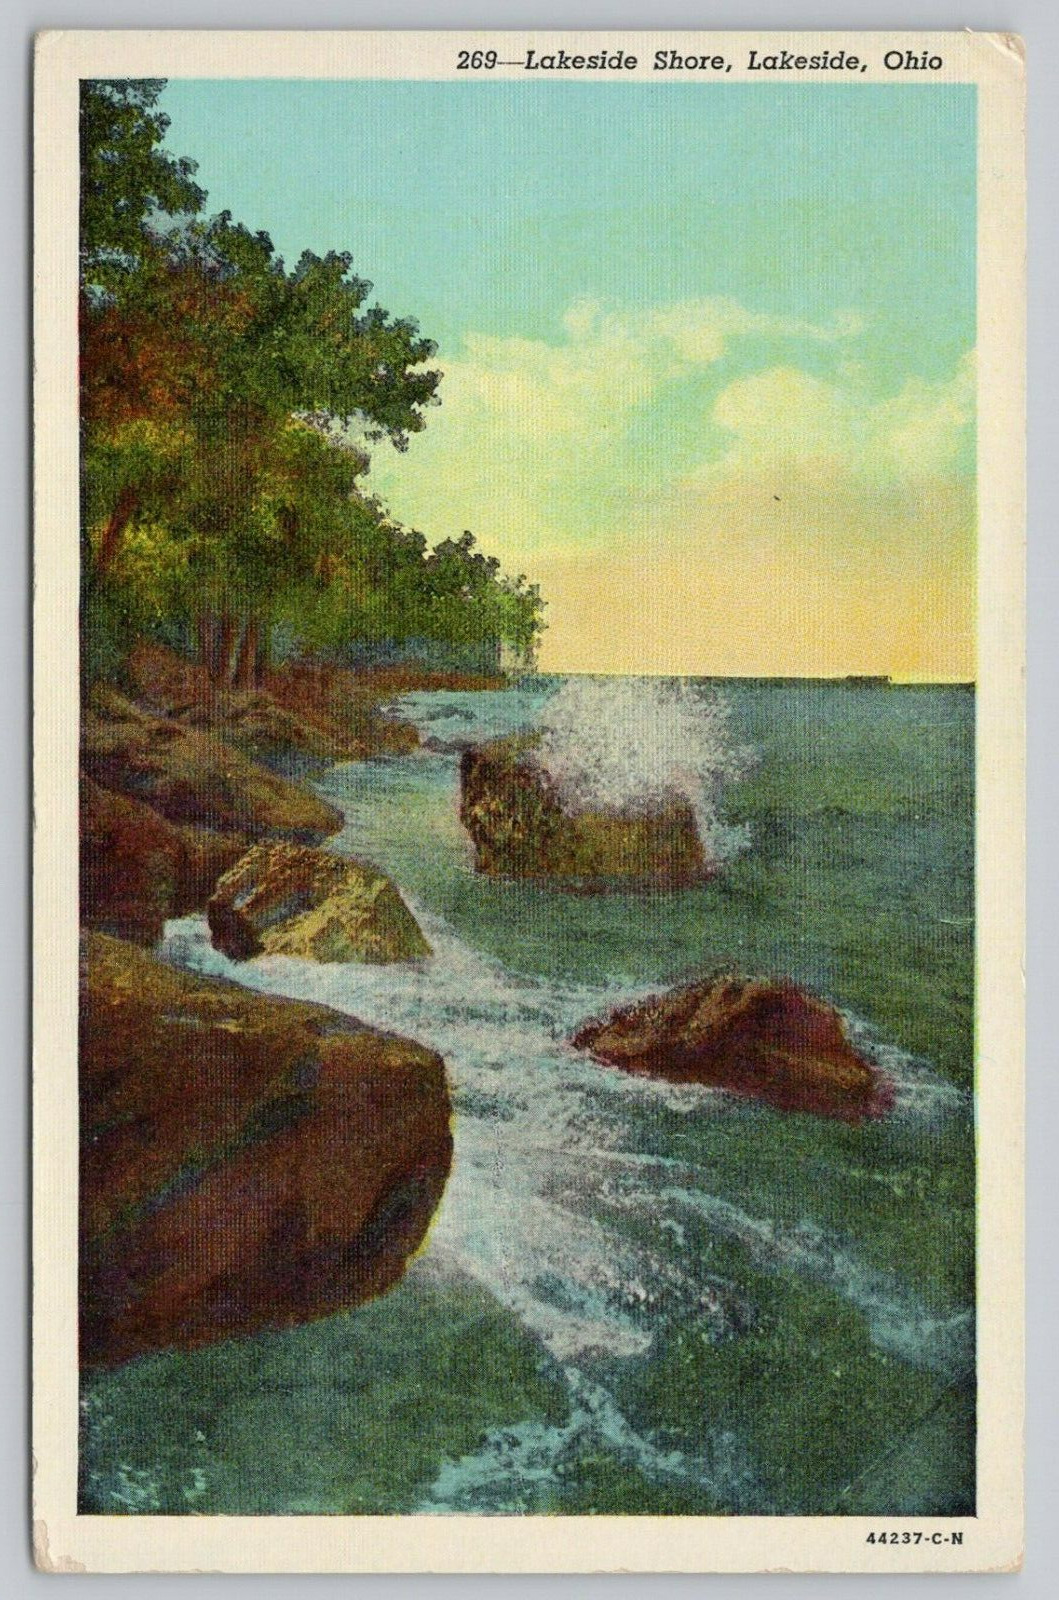 Postcard Lakeside Shore, Ohio, The Chautauqua of the Great Lakes